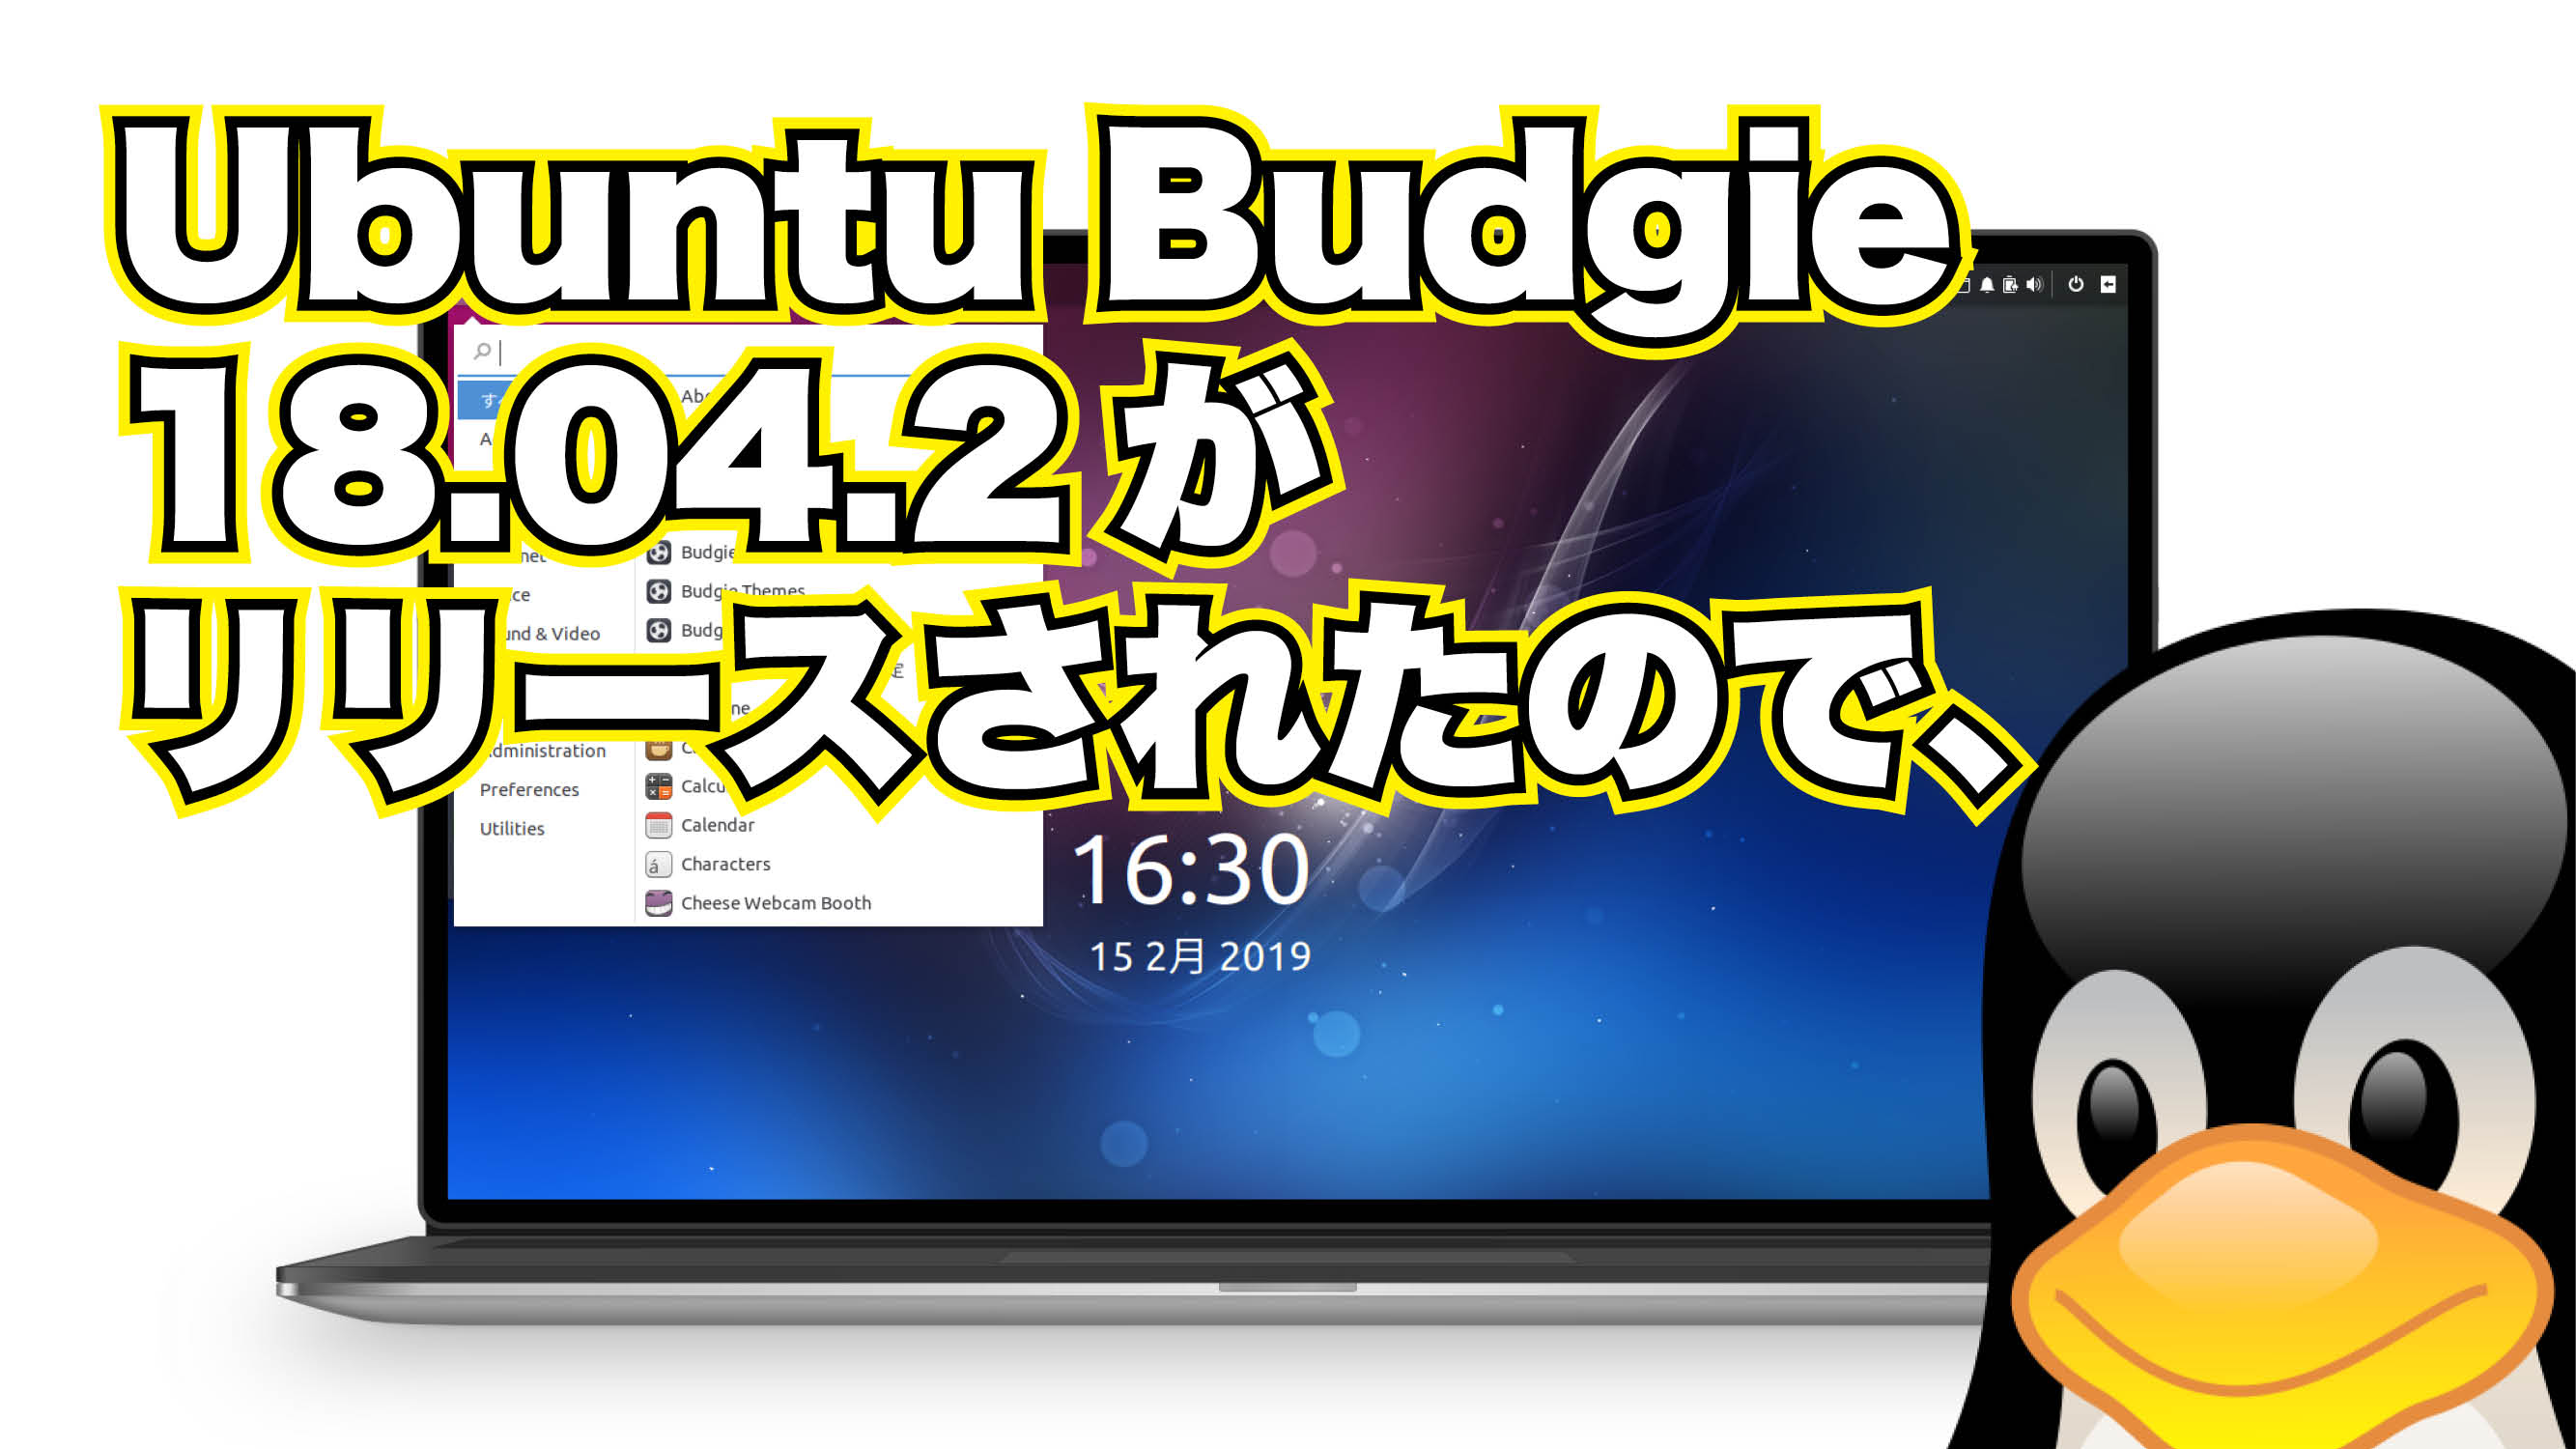 Ubuntu Budgie 18.04.2 がリリースされたので、